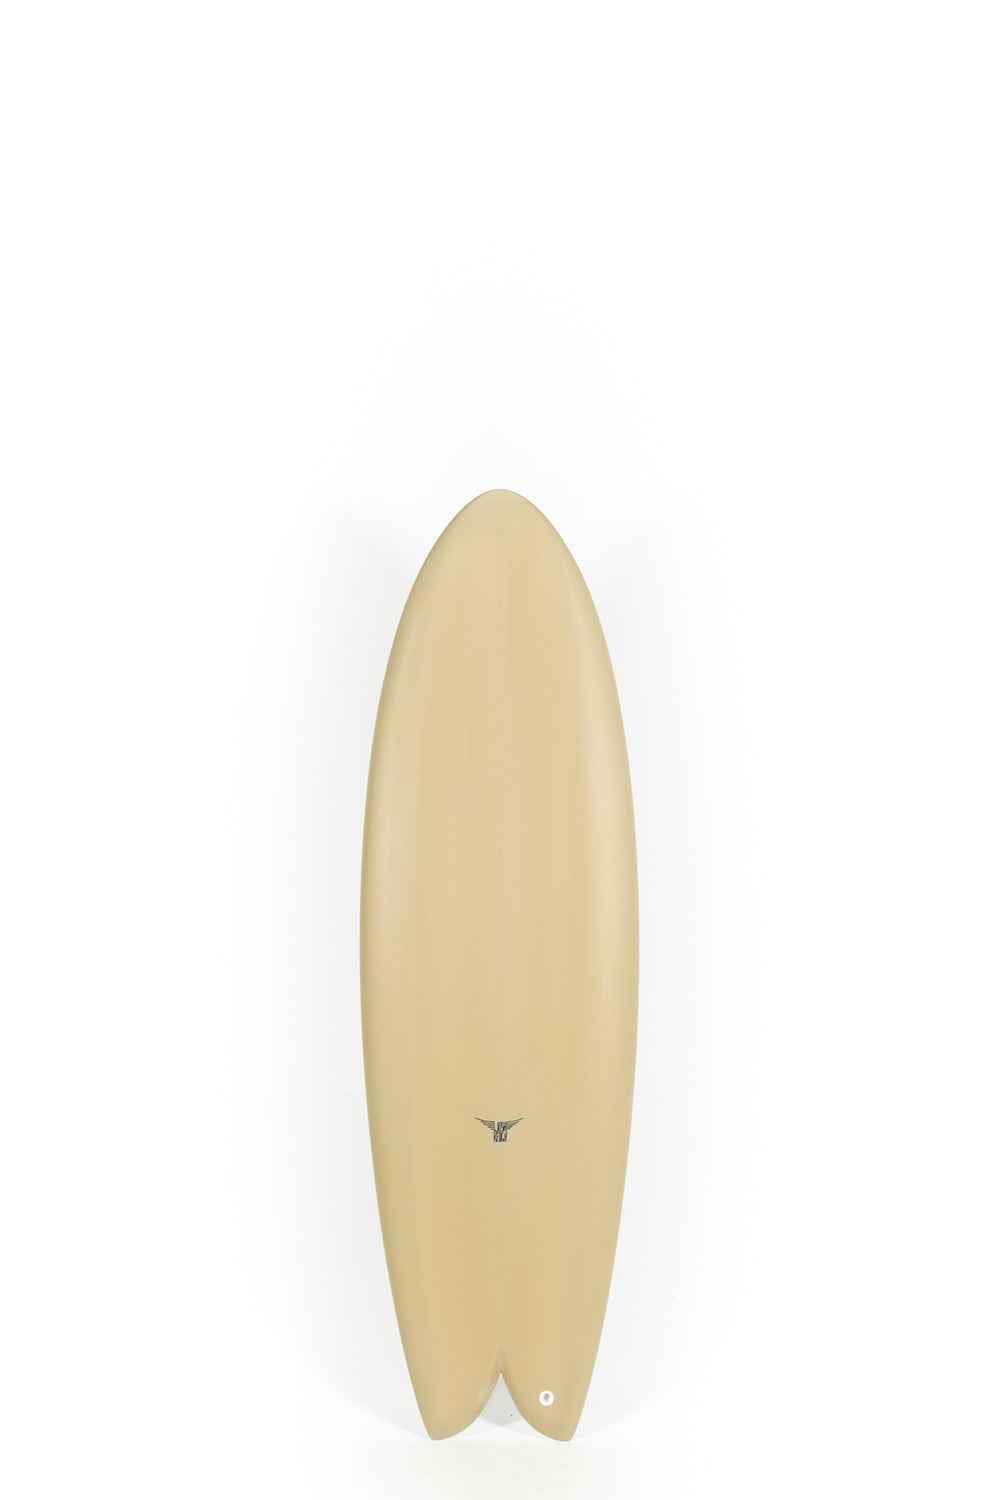 Pukas Surf Shop_Joshua Keogh Surfboard - MONAD by Joshua Keogh - 5'10